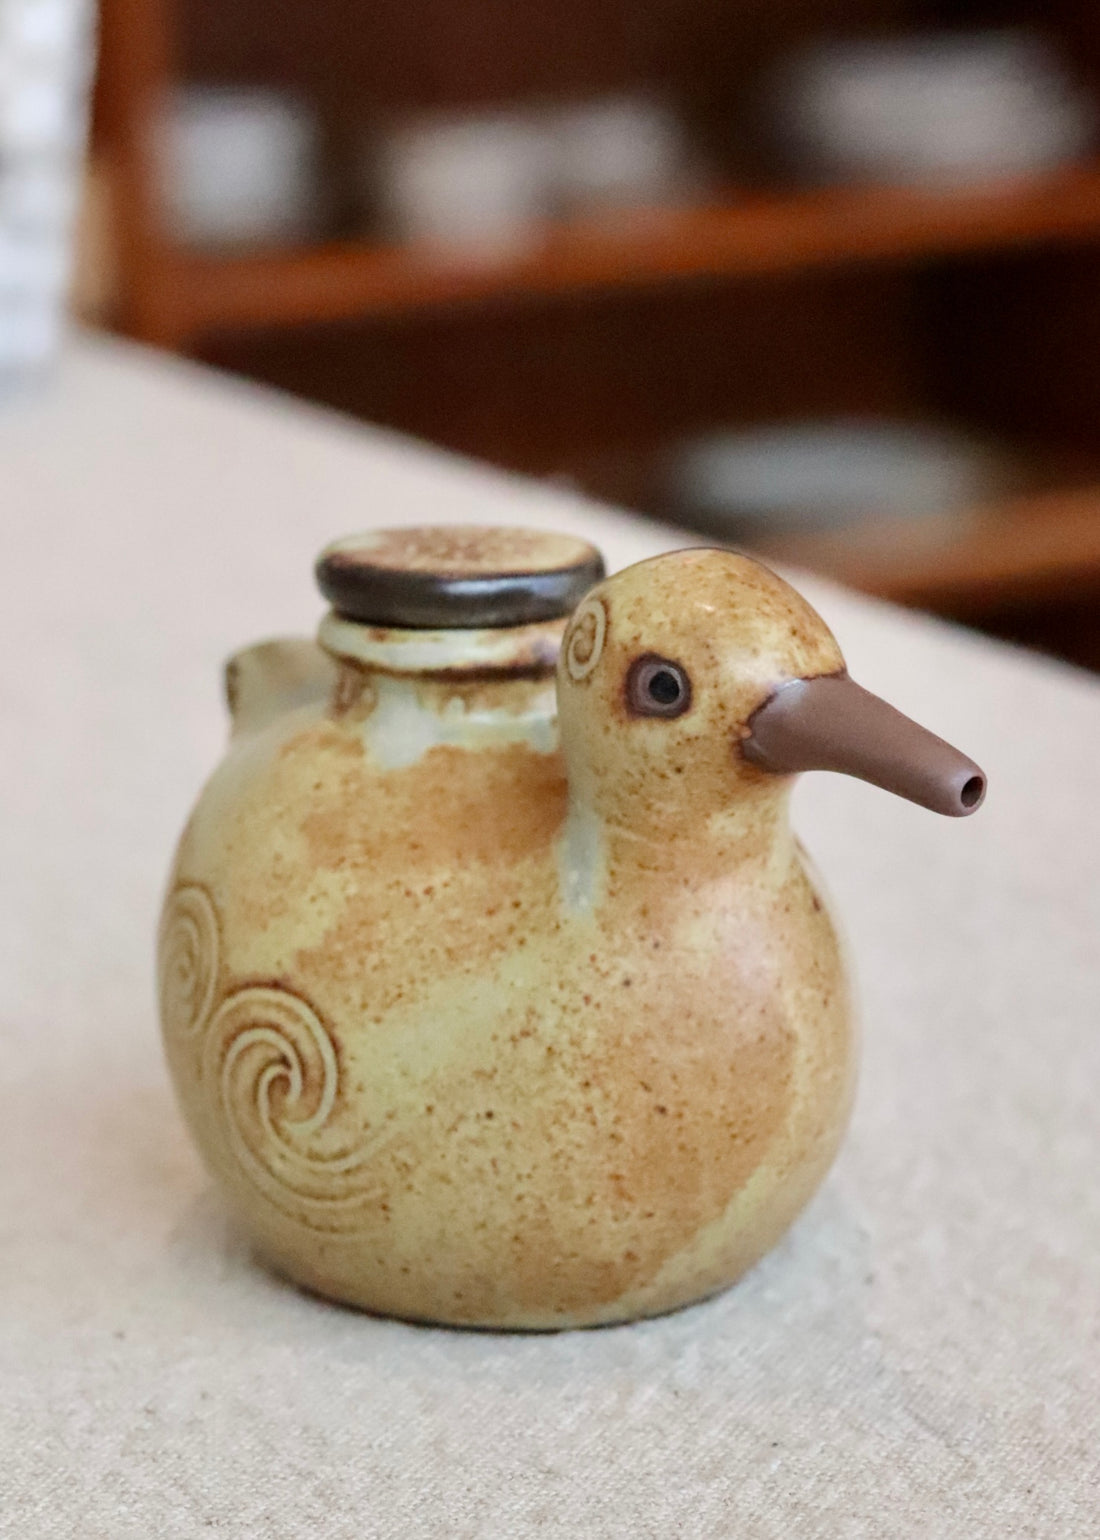 Japanese Ceramic Birds Soy Sauce Dispenser